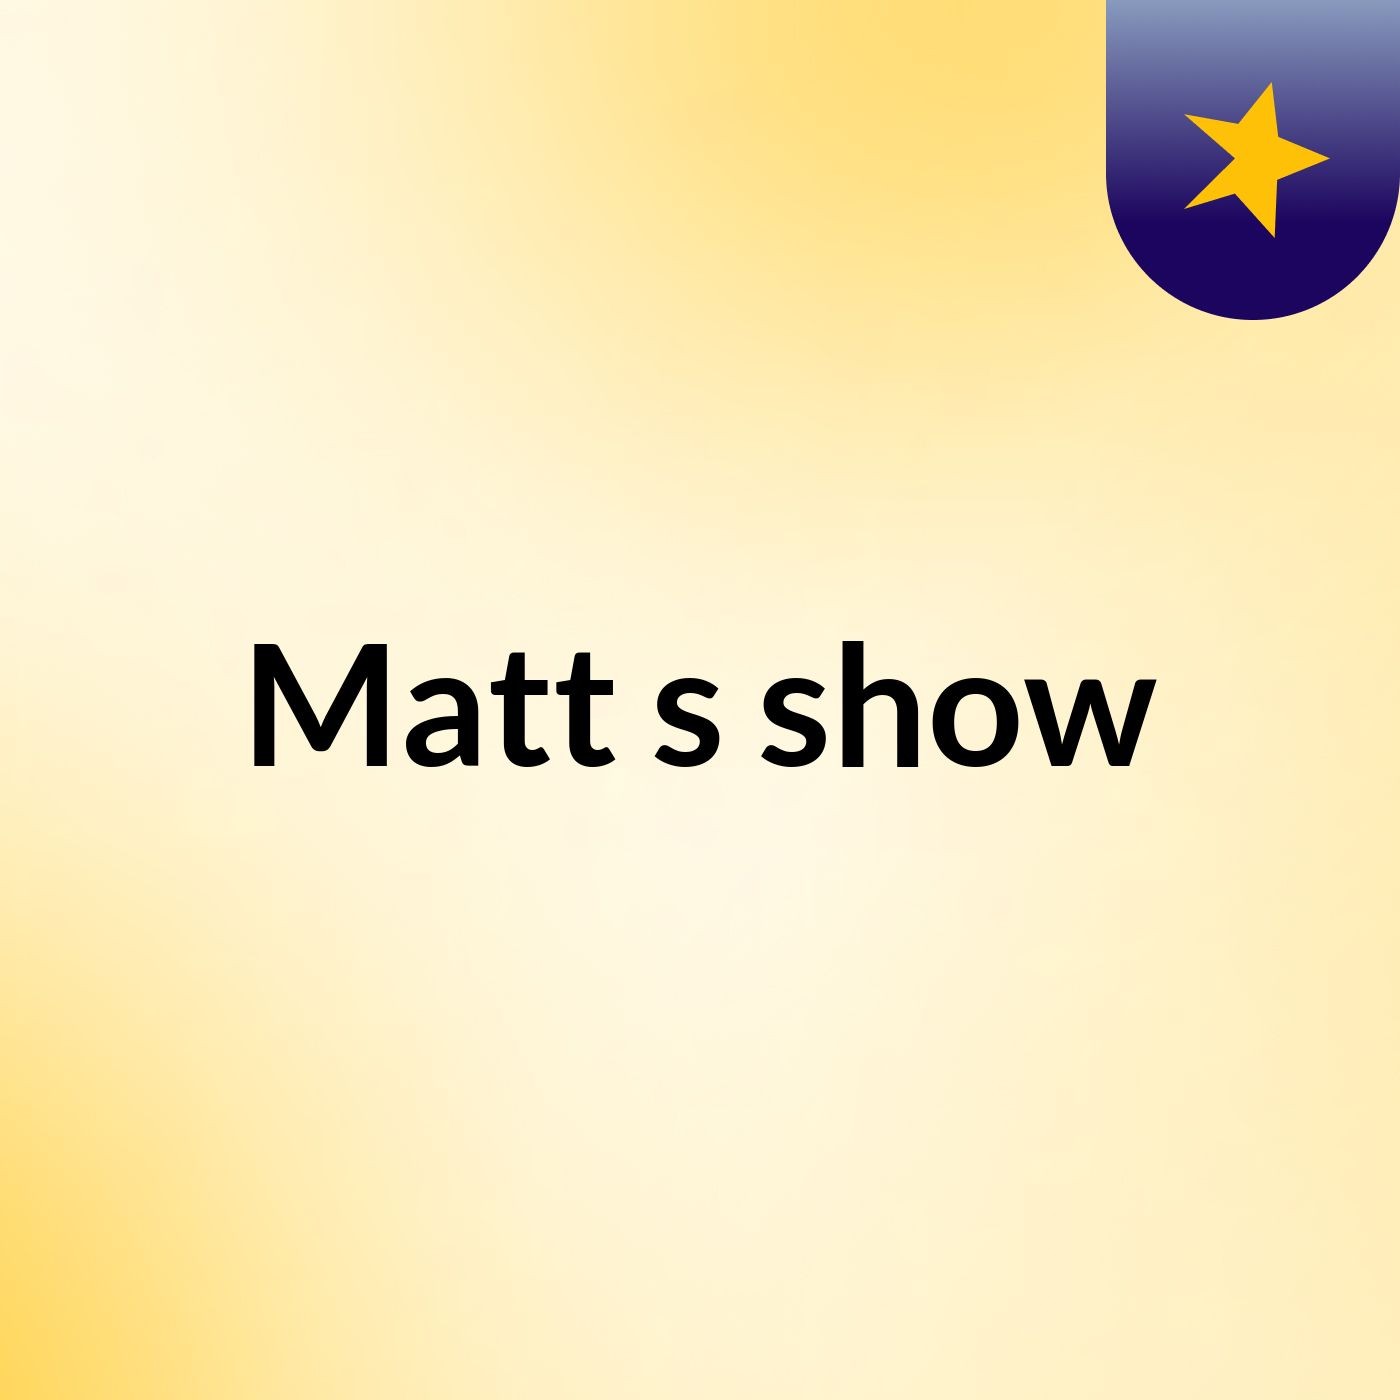 Matt's show